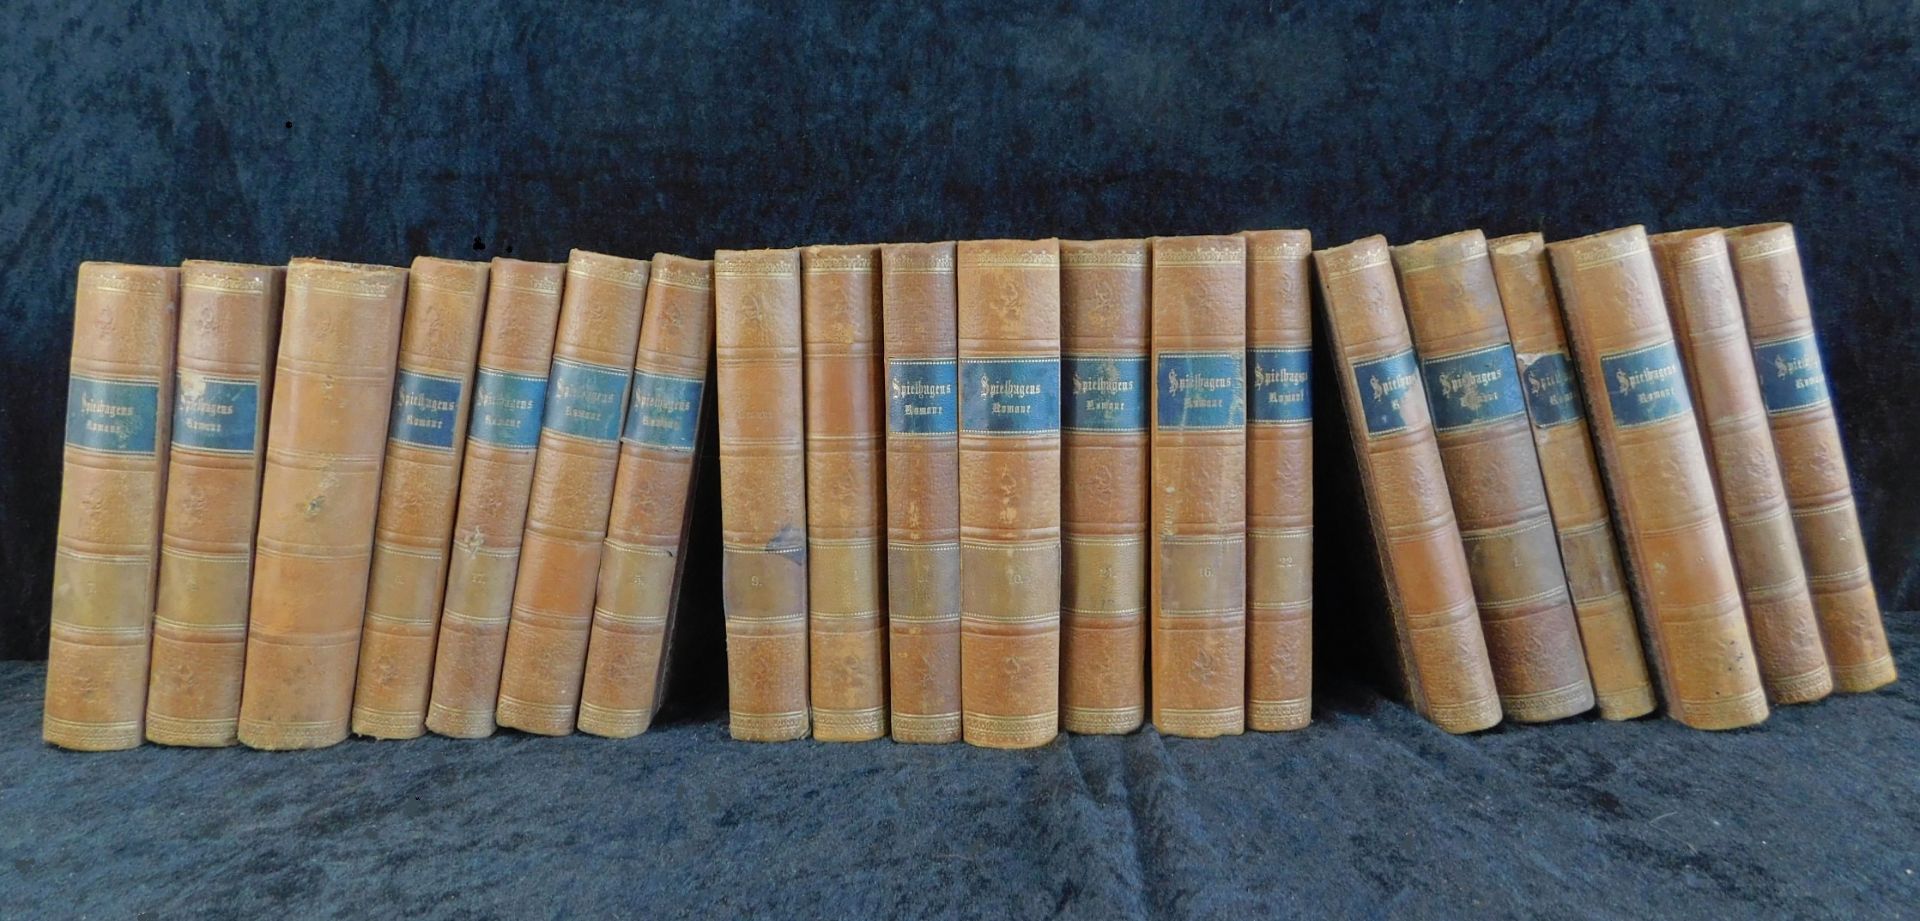 Friedrich Spielhagens sämtl. Romane, 20 Bände, Verlag v. L. Staakmann, Leipzig 1901